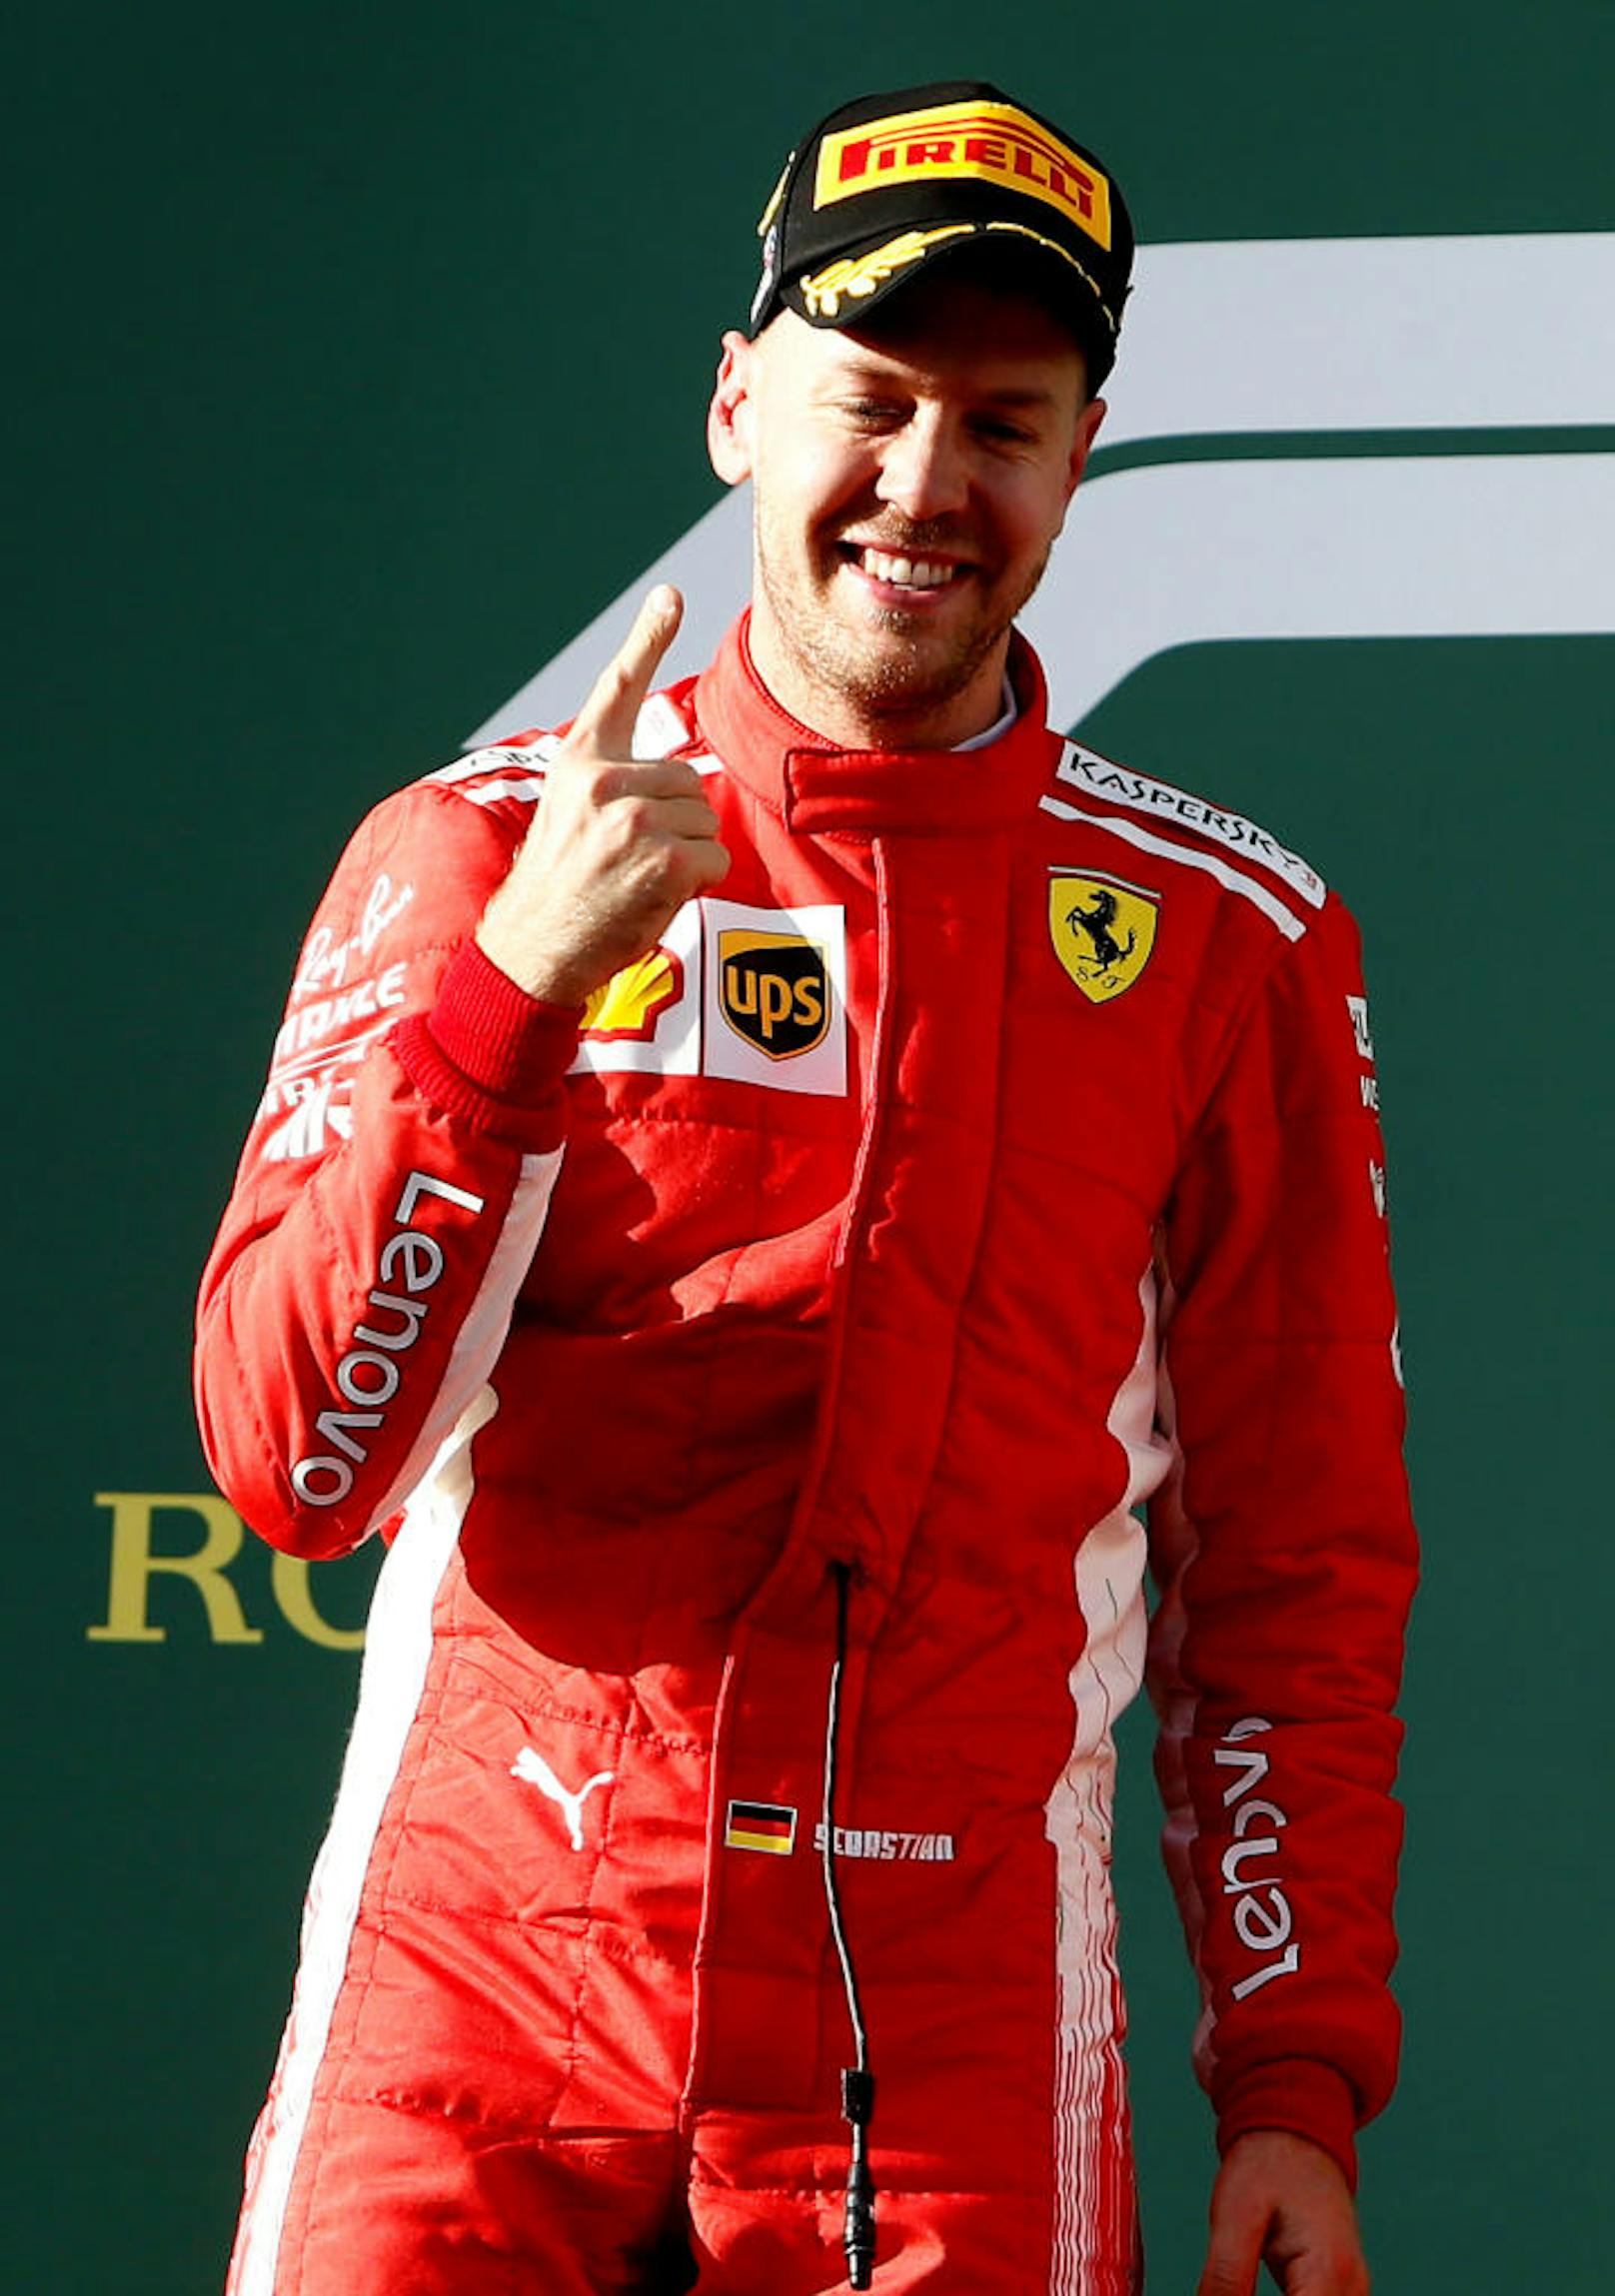 Der Vettel-Finger durfte freilich nicht fehlen.